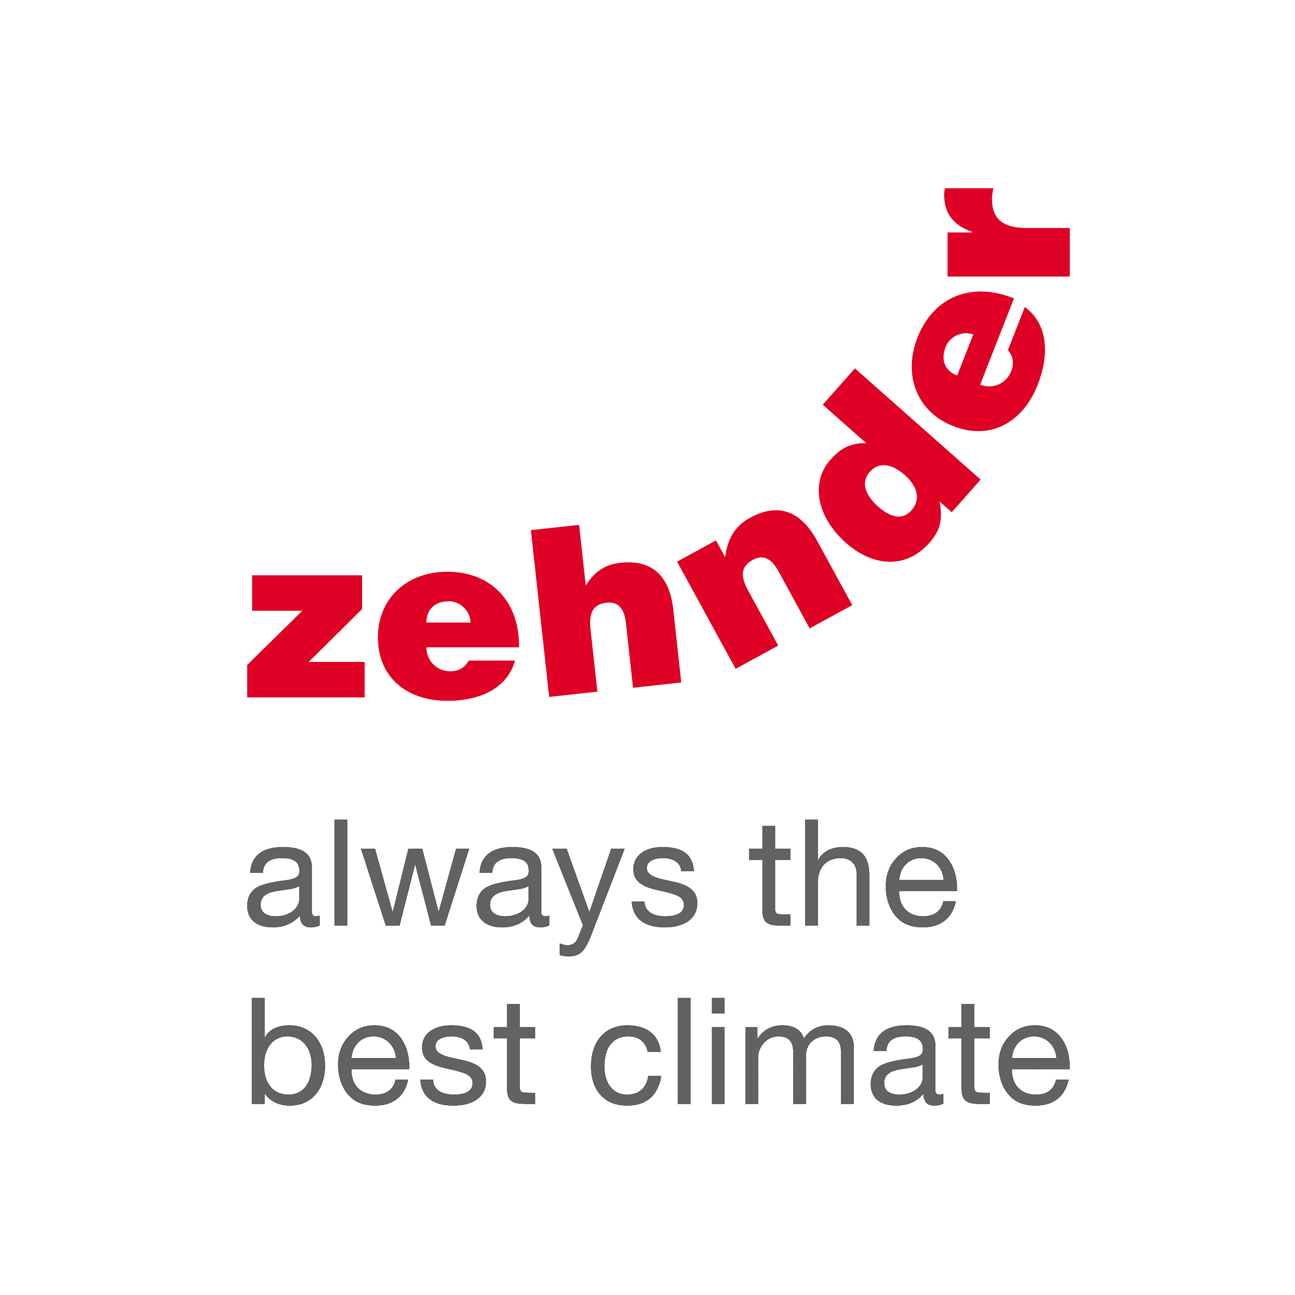 Zehnder-logo